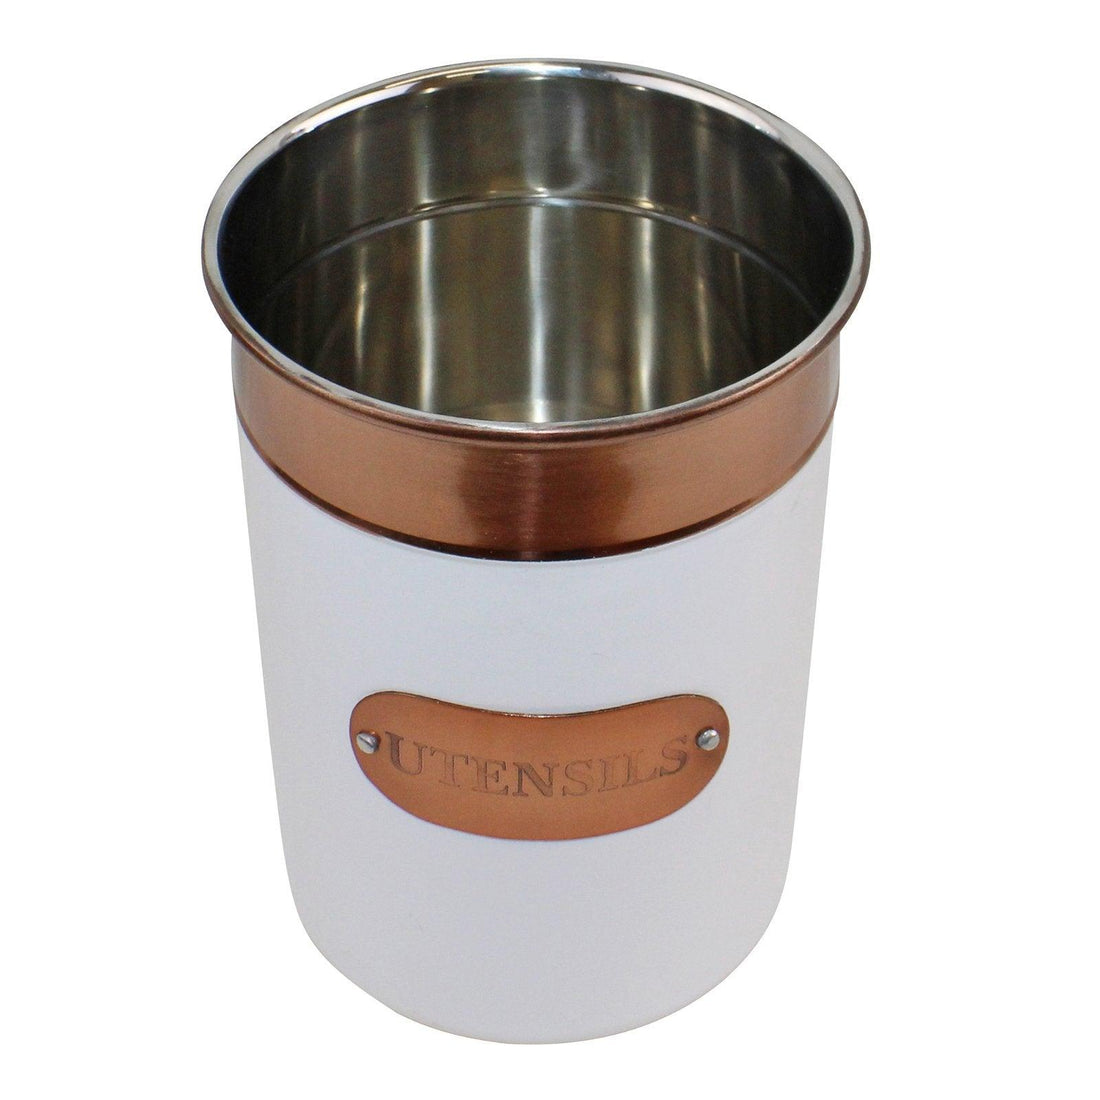 Utensils Holder, Copper & White Metal Design - £20.99 - Kitchen Storage 